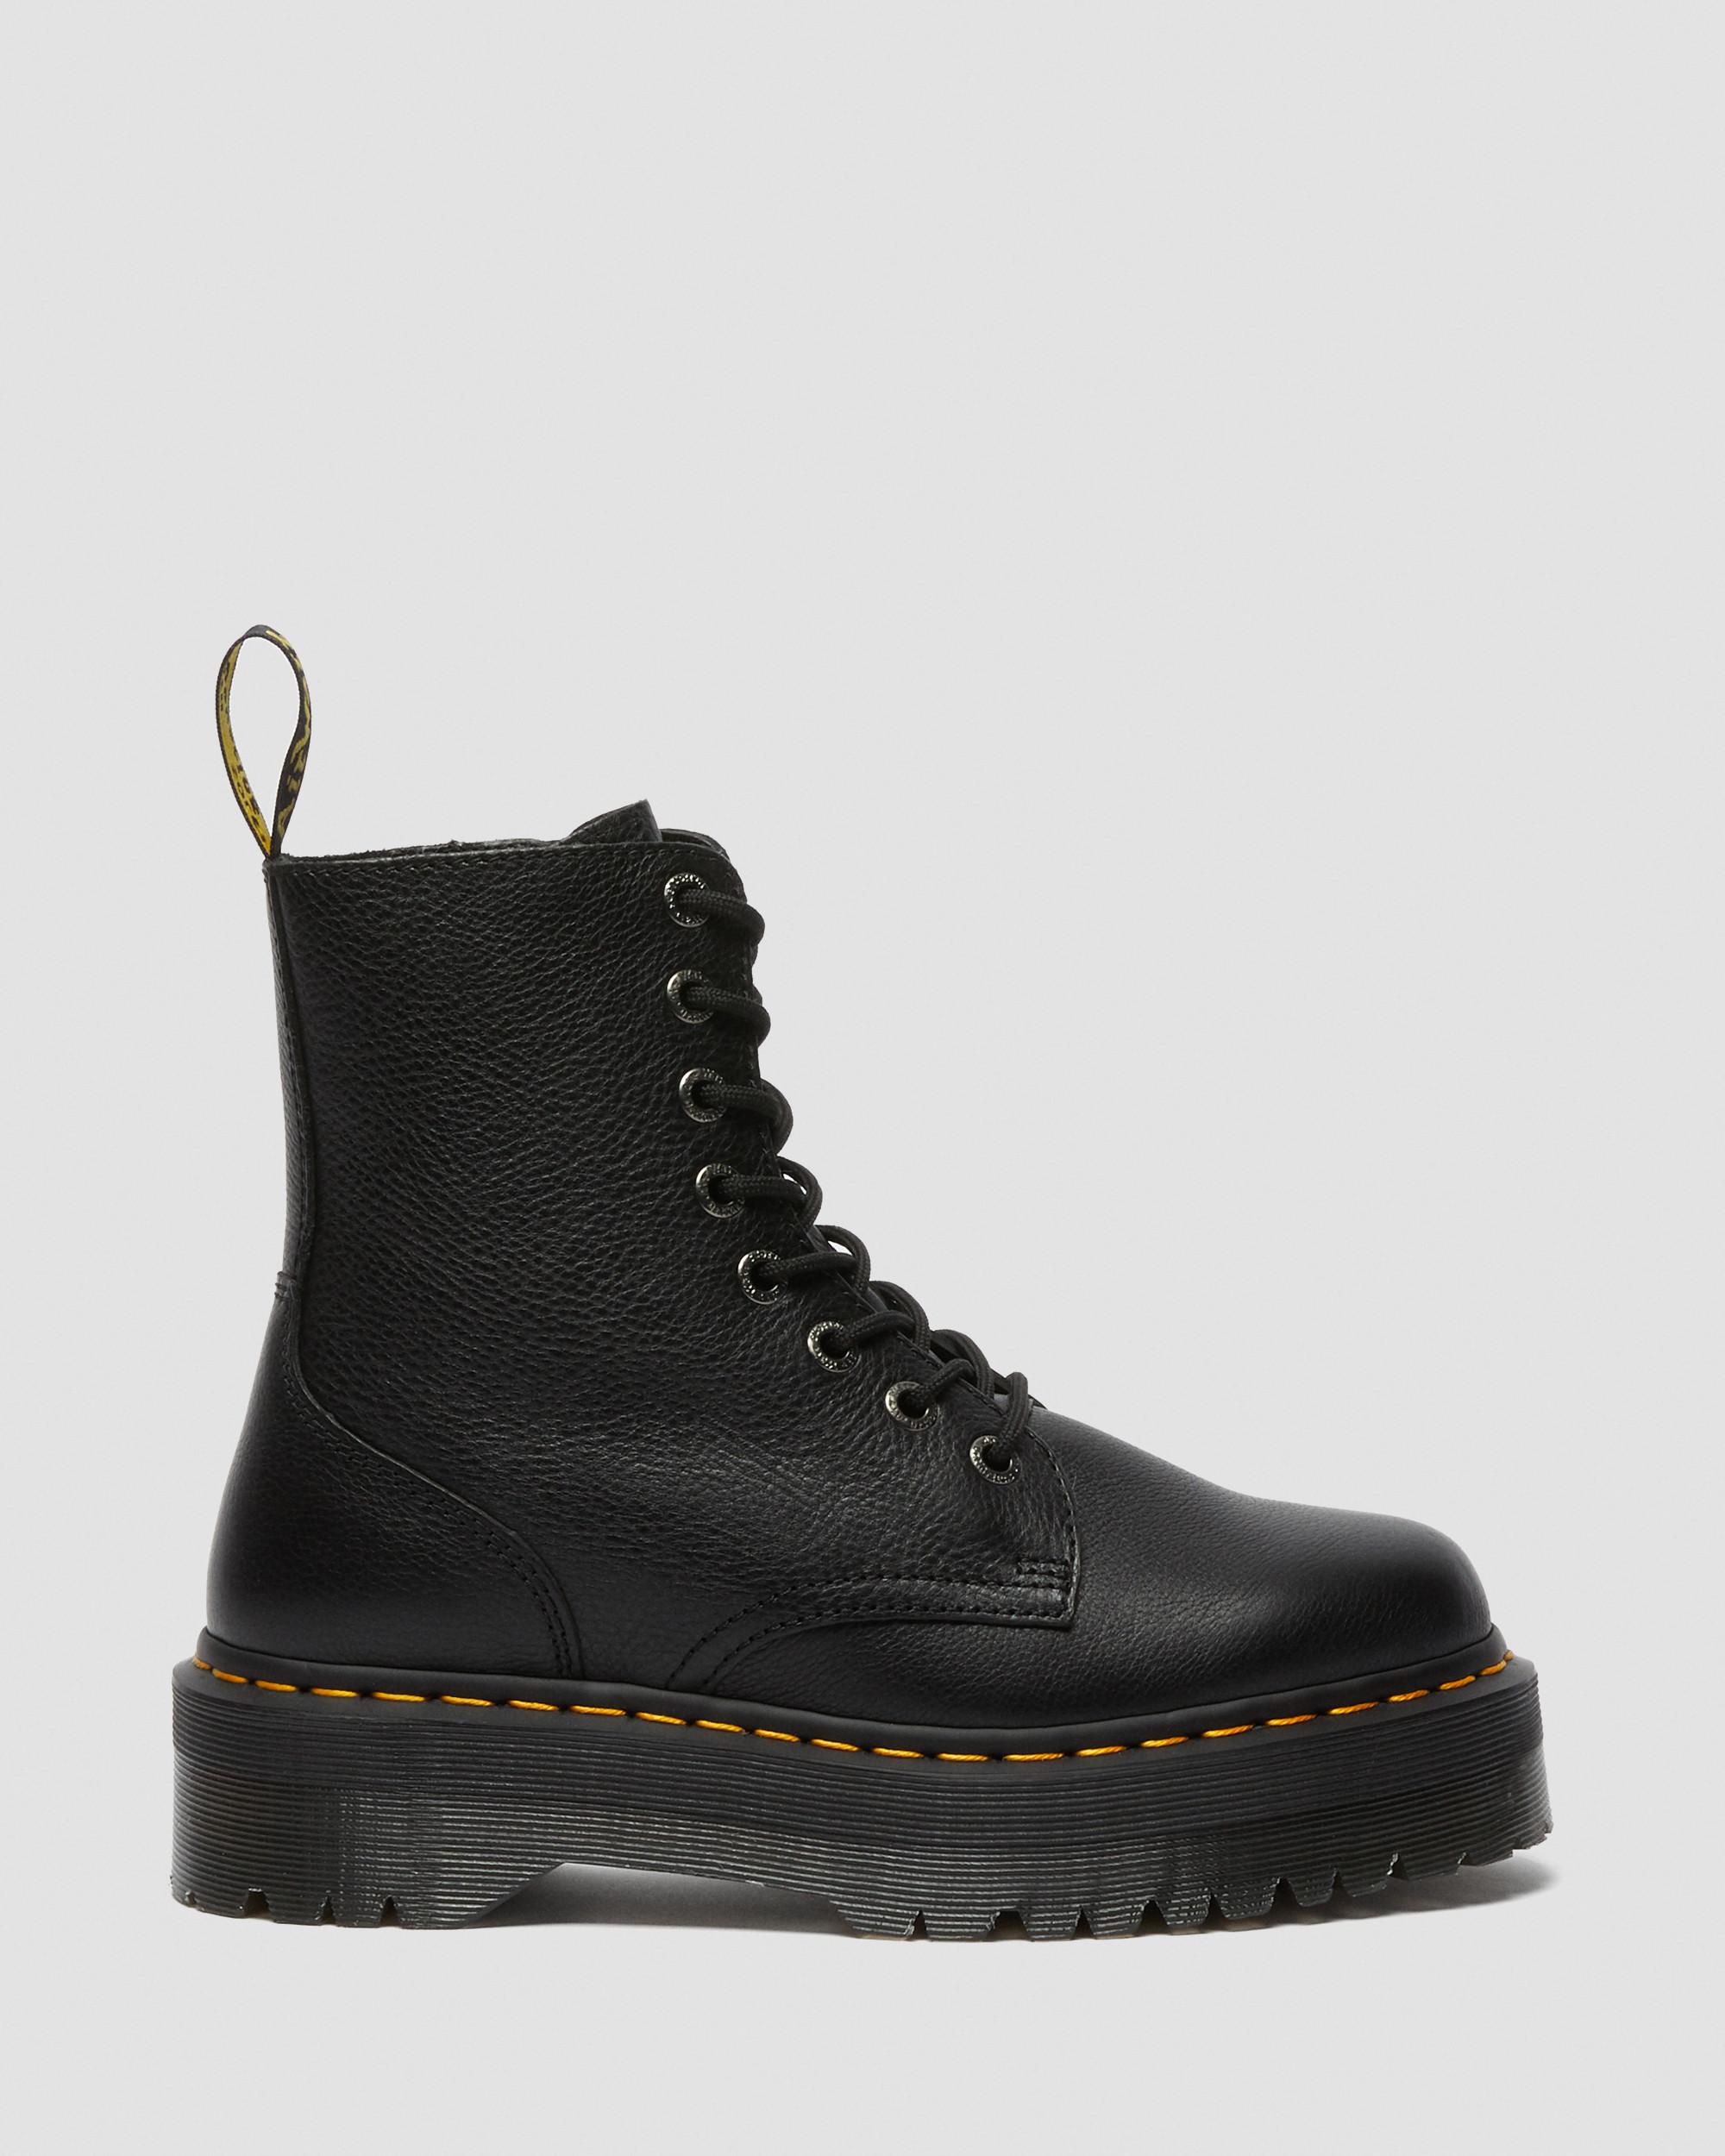 Jadon III Pisa Leather Platform Boots in Black | Dr. Martens